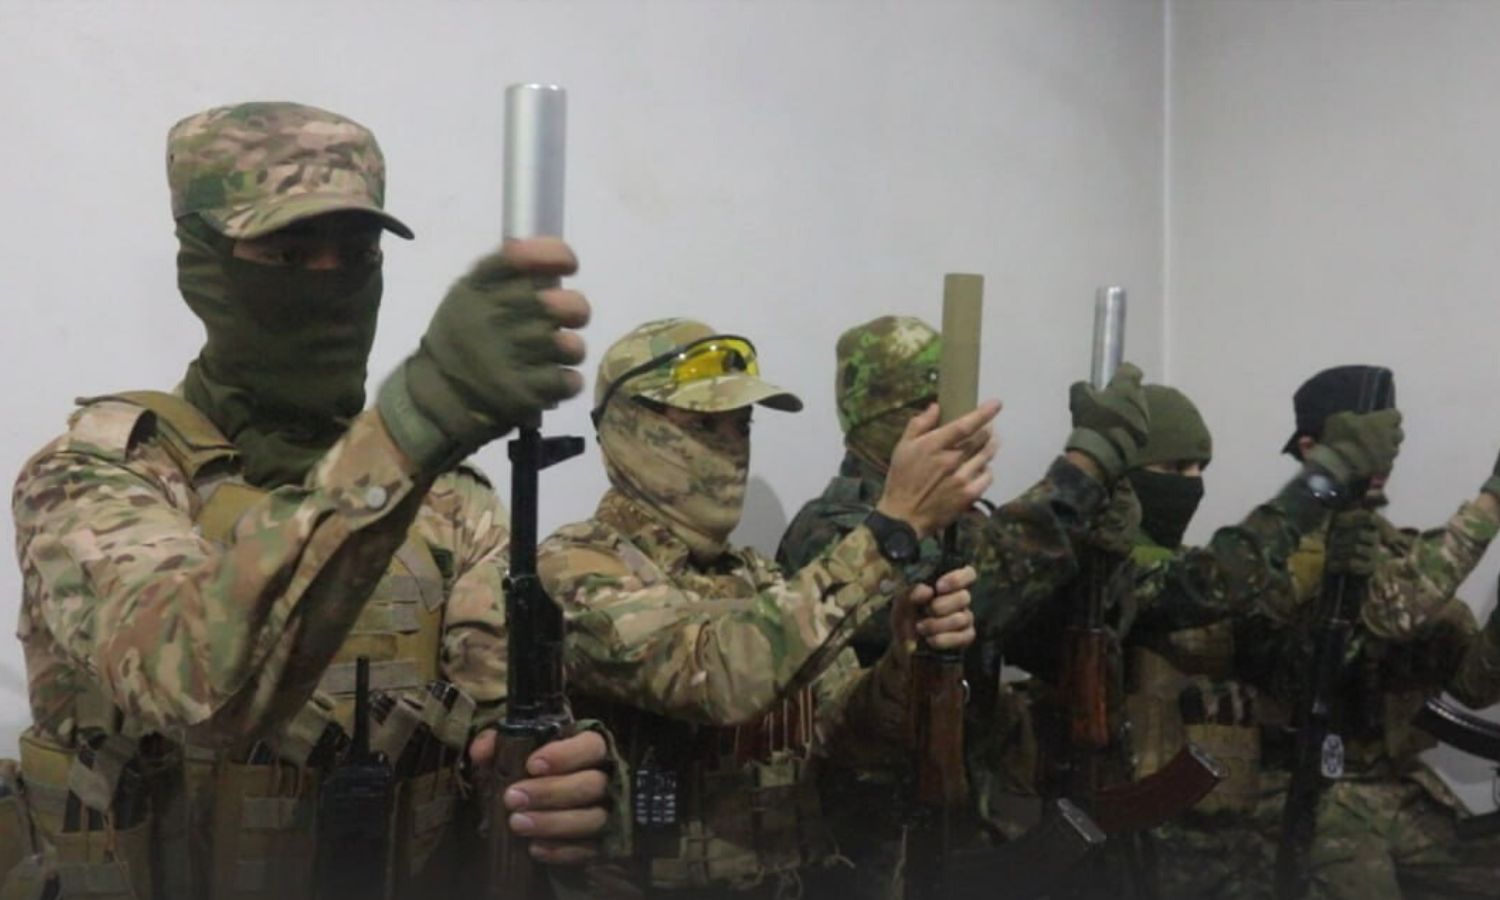 مقاتلون في "هيئة تحرير الشام" خلال استعدادهم لتنفيذ عملية “انغماسية” على موقع لقوات النظام السوري في قرية نحشبا بريف اللاذقية- 14 كانون الثاني 2023 (أمجاد)